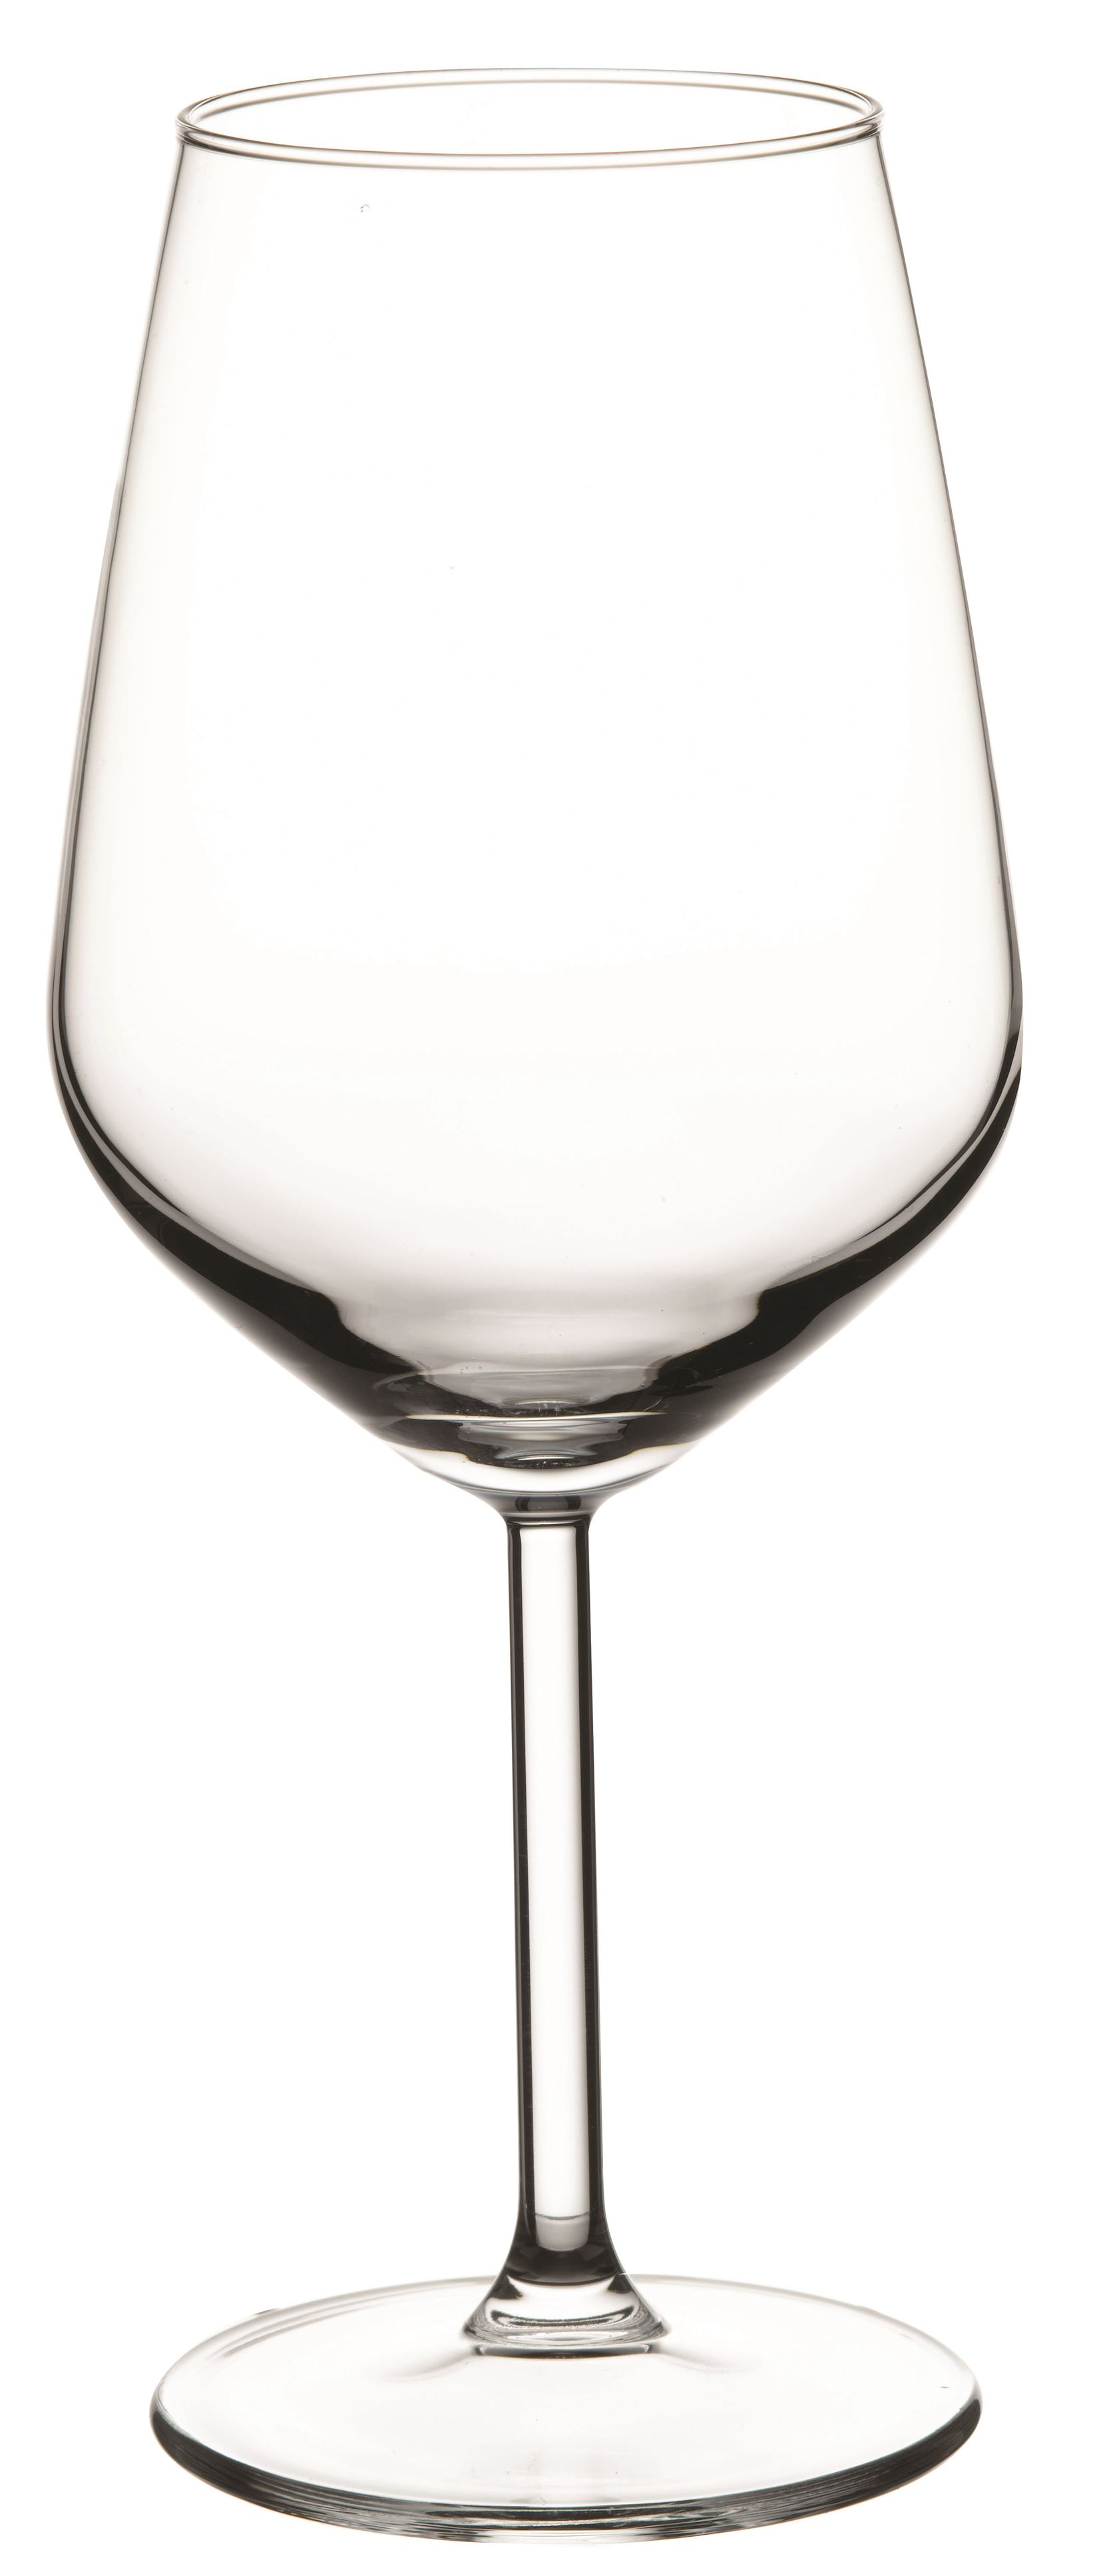 Weinglas Inhalt 0,490 Liter, Serie Allegra, aus Glas